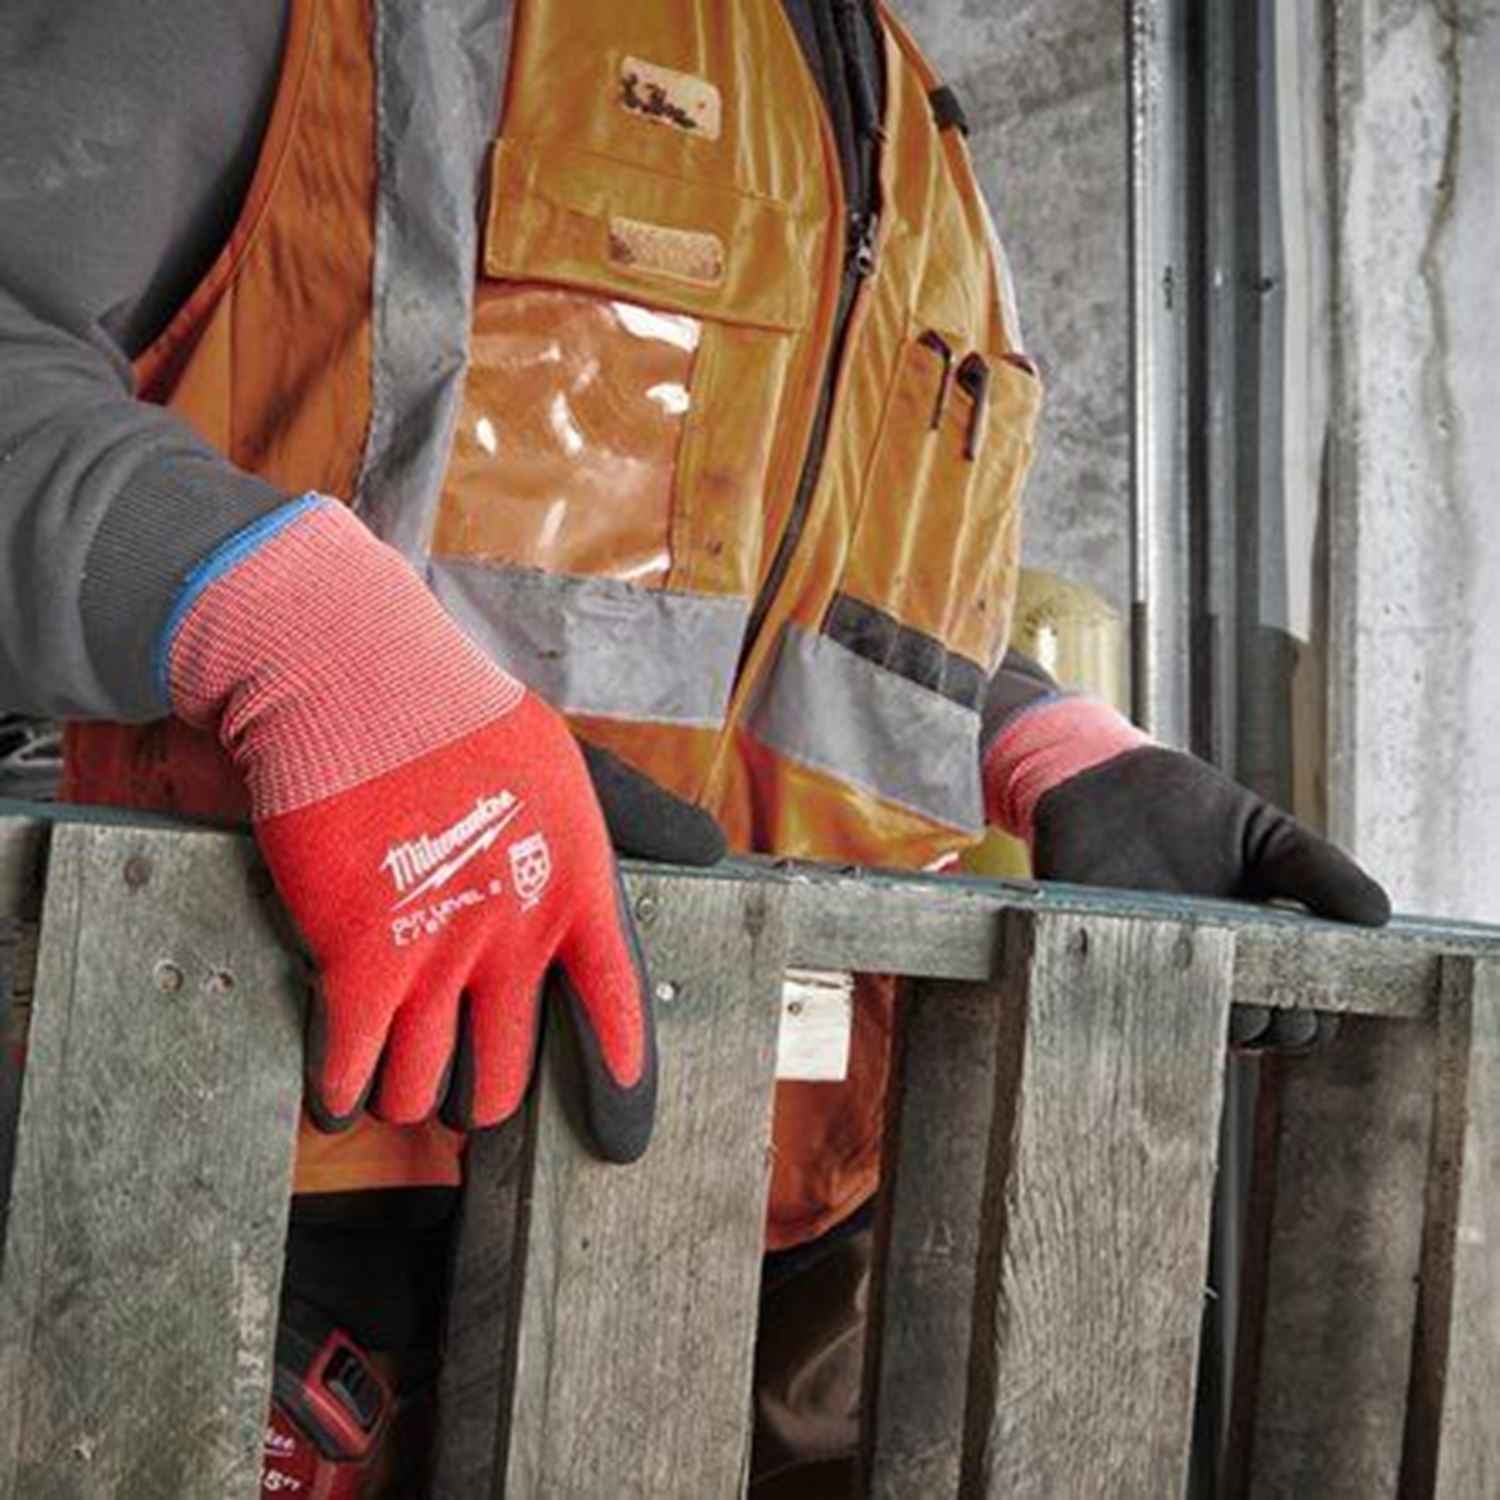 Снимка на Зимни устойчиви на порязване ръкавици CUT B, XL, 4932480604, Milwaukee